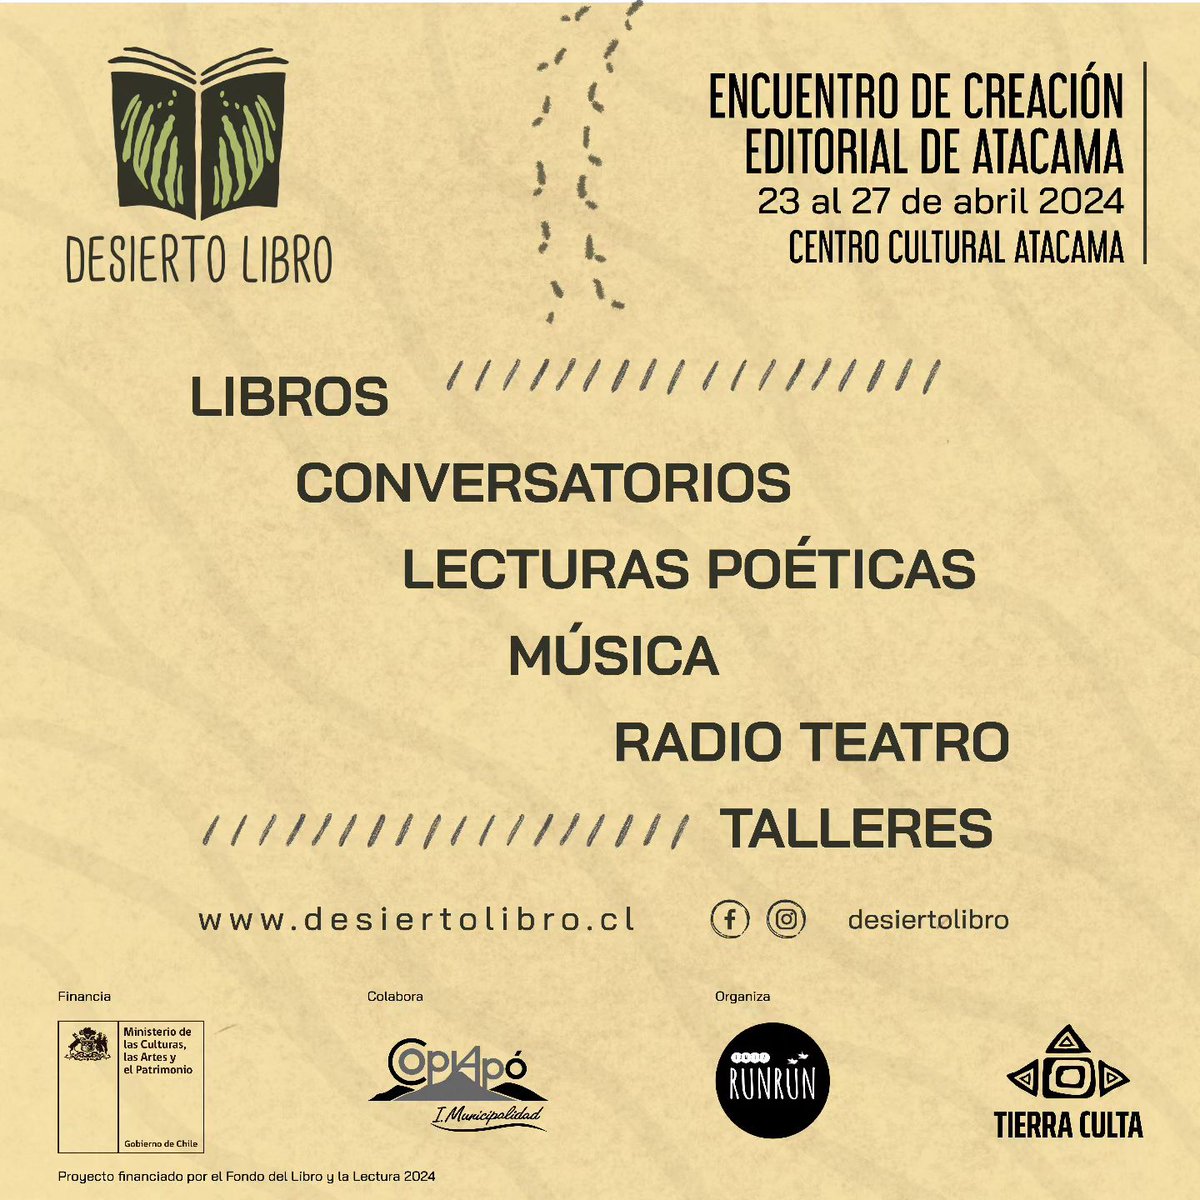 #HayQueIr ✨Encuentro de Creación Editorial de Atacama✨ #DiaDelLibro 

Acompáñanos desde hoy en #Desiertolibro y comparte el amor por los libros y la literatura🌹📚🥳

No faltes!!! y #LeeUnPocoCadaDía☝️😊
#Copiapó #Atacama